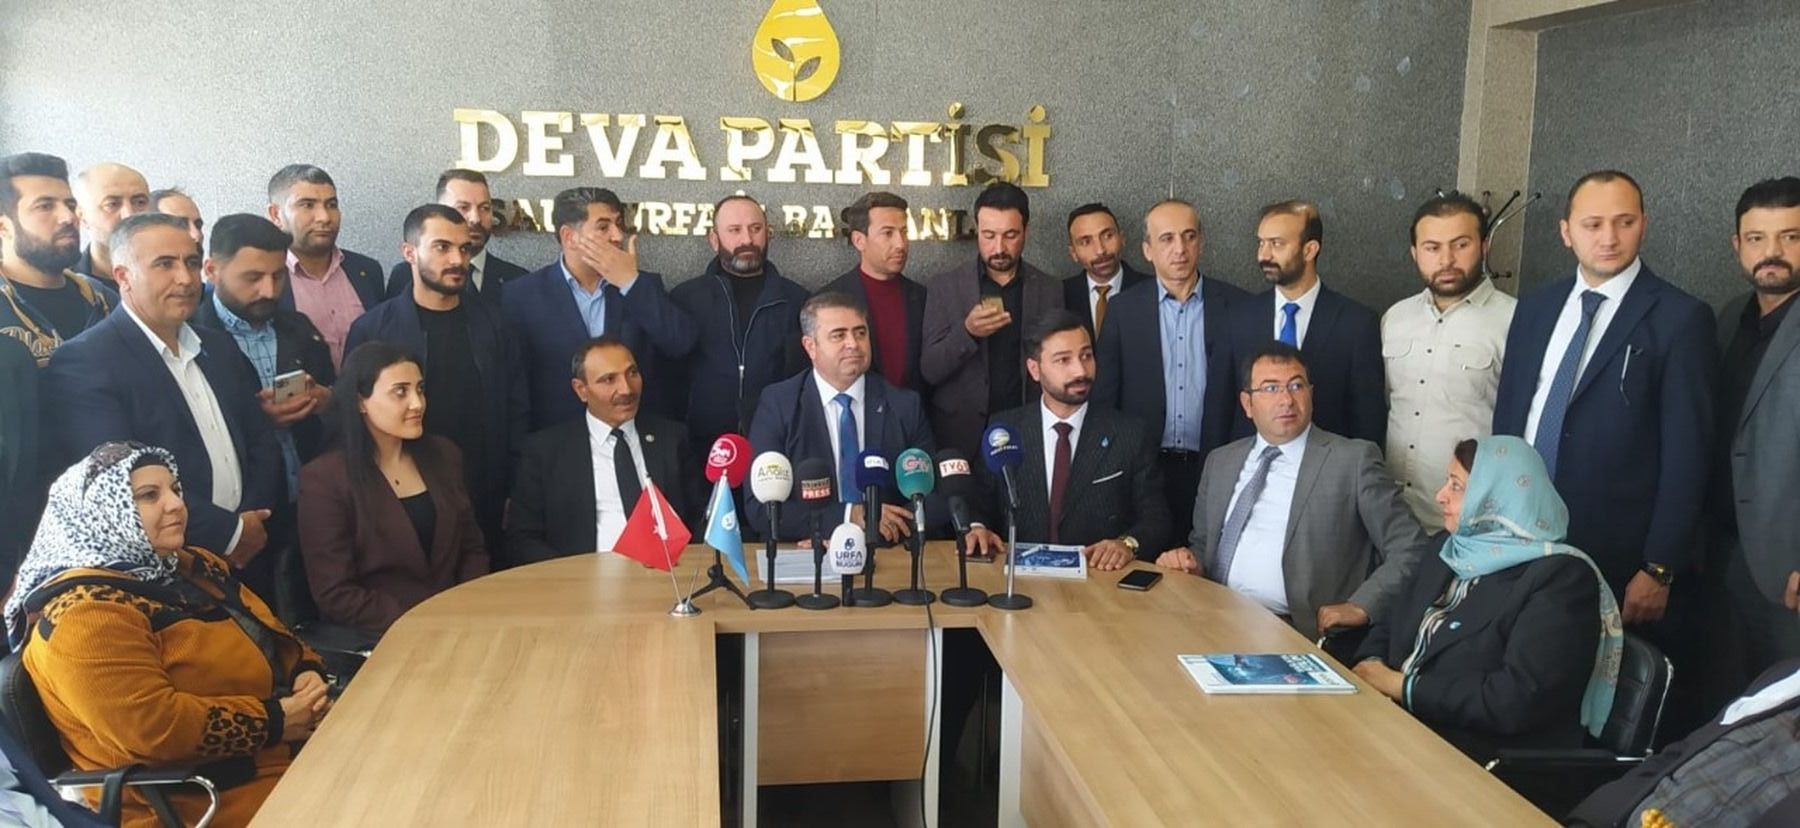 Av. İbrahim Halil Aydın, DEVA Partisi Şanlıurfa İl Başkanı oldu.